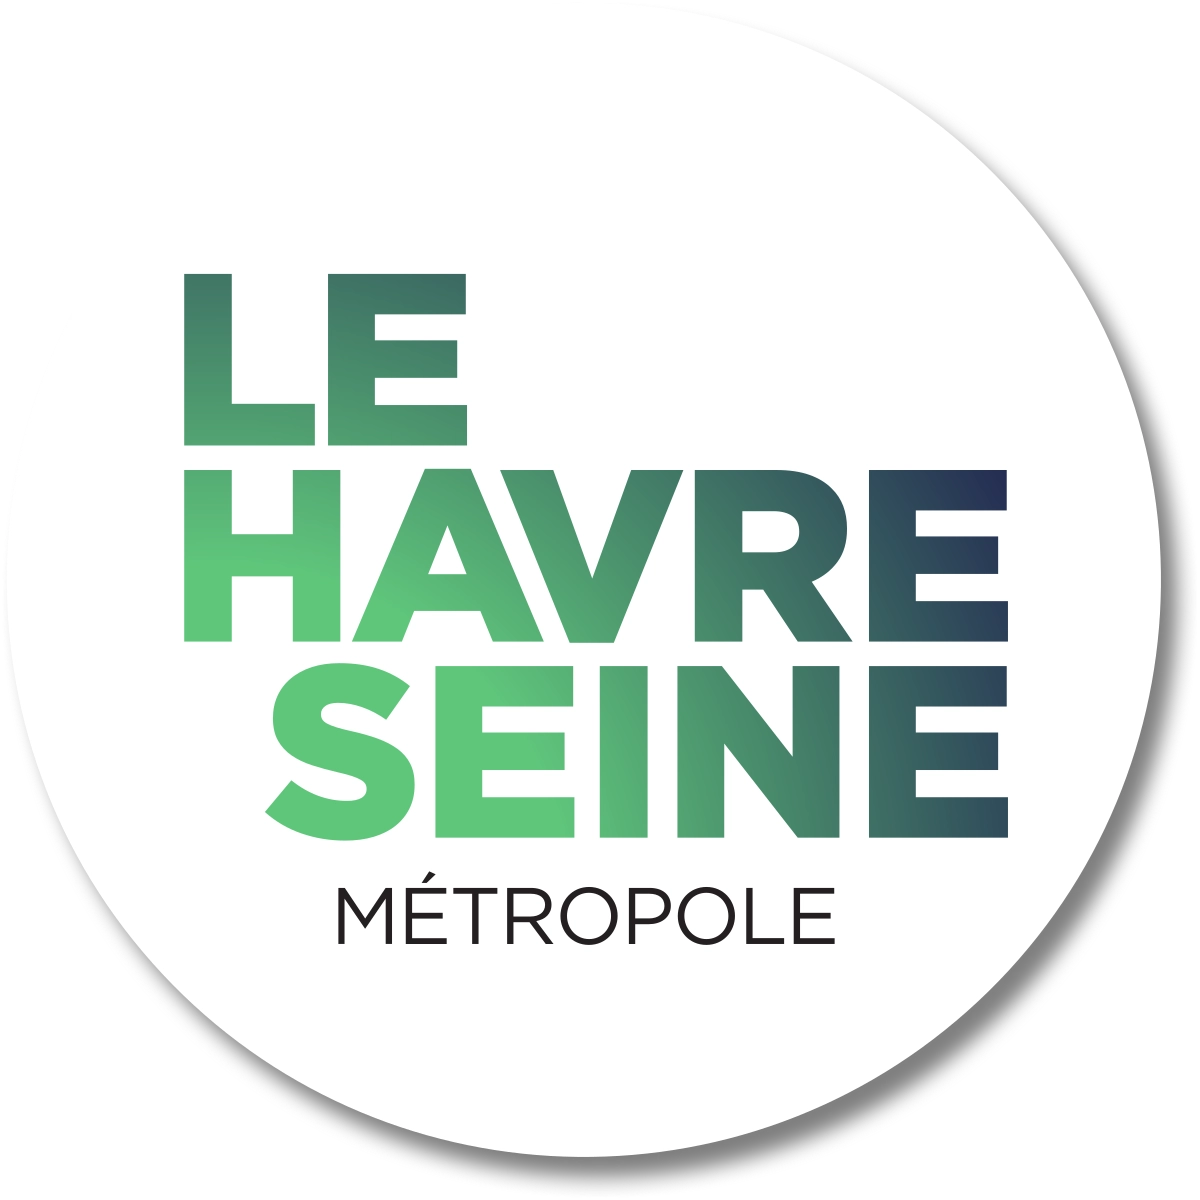 Metrópolis del Havre Seine 